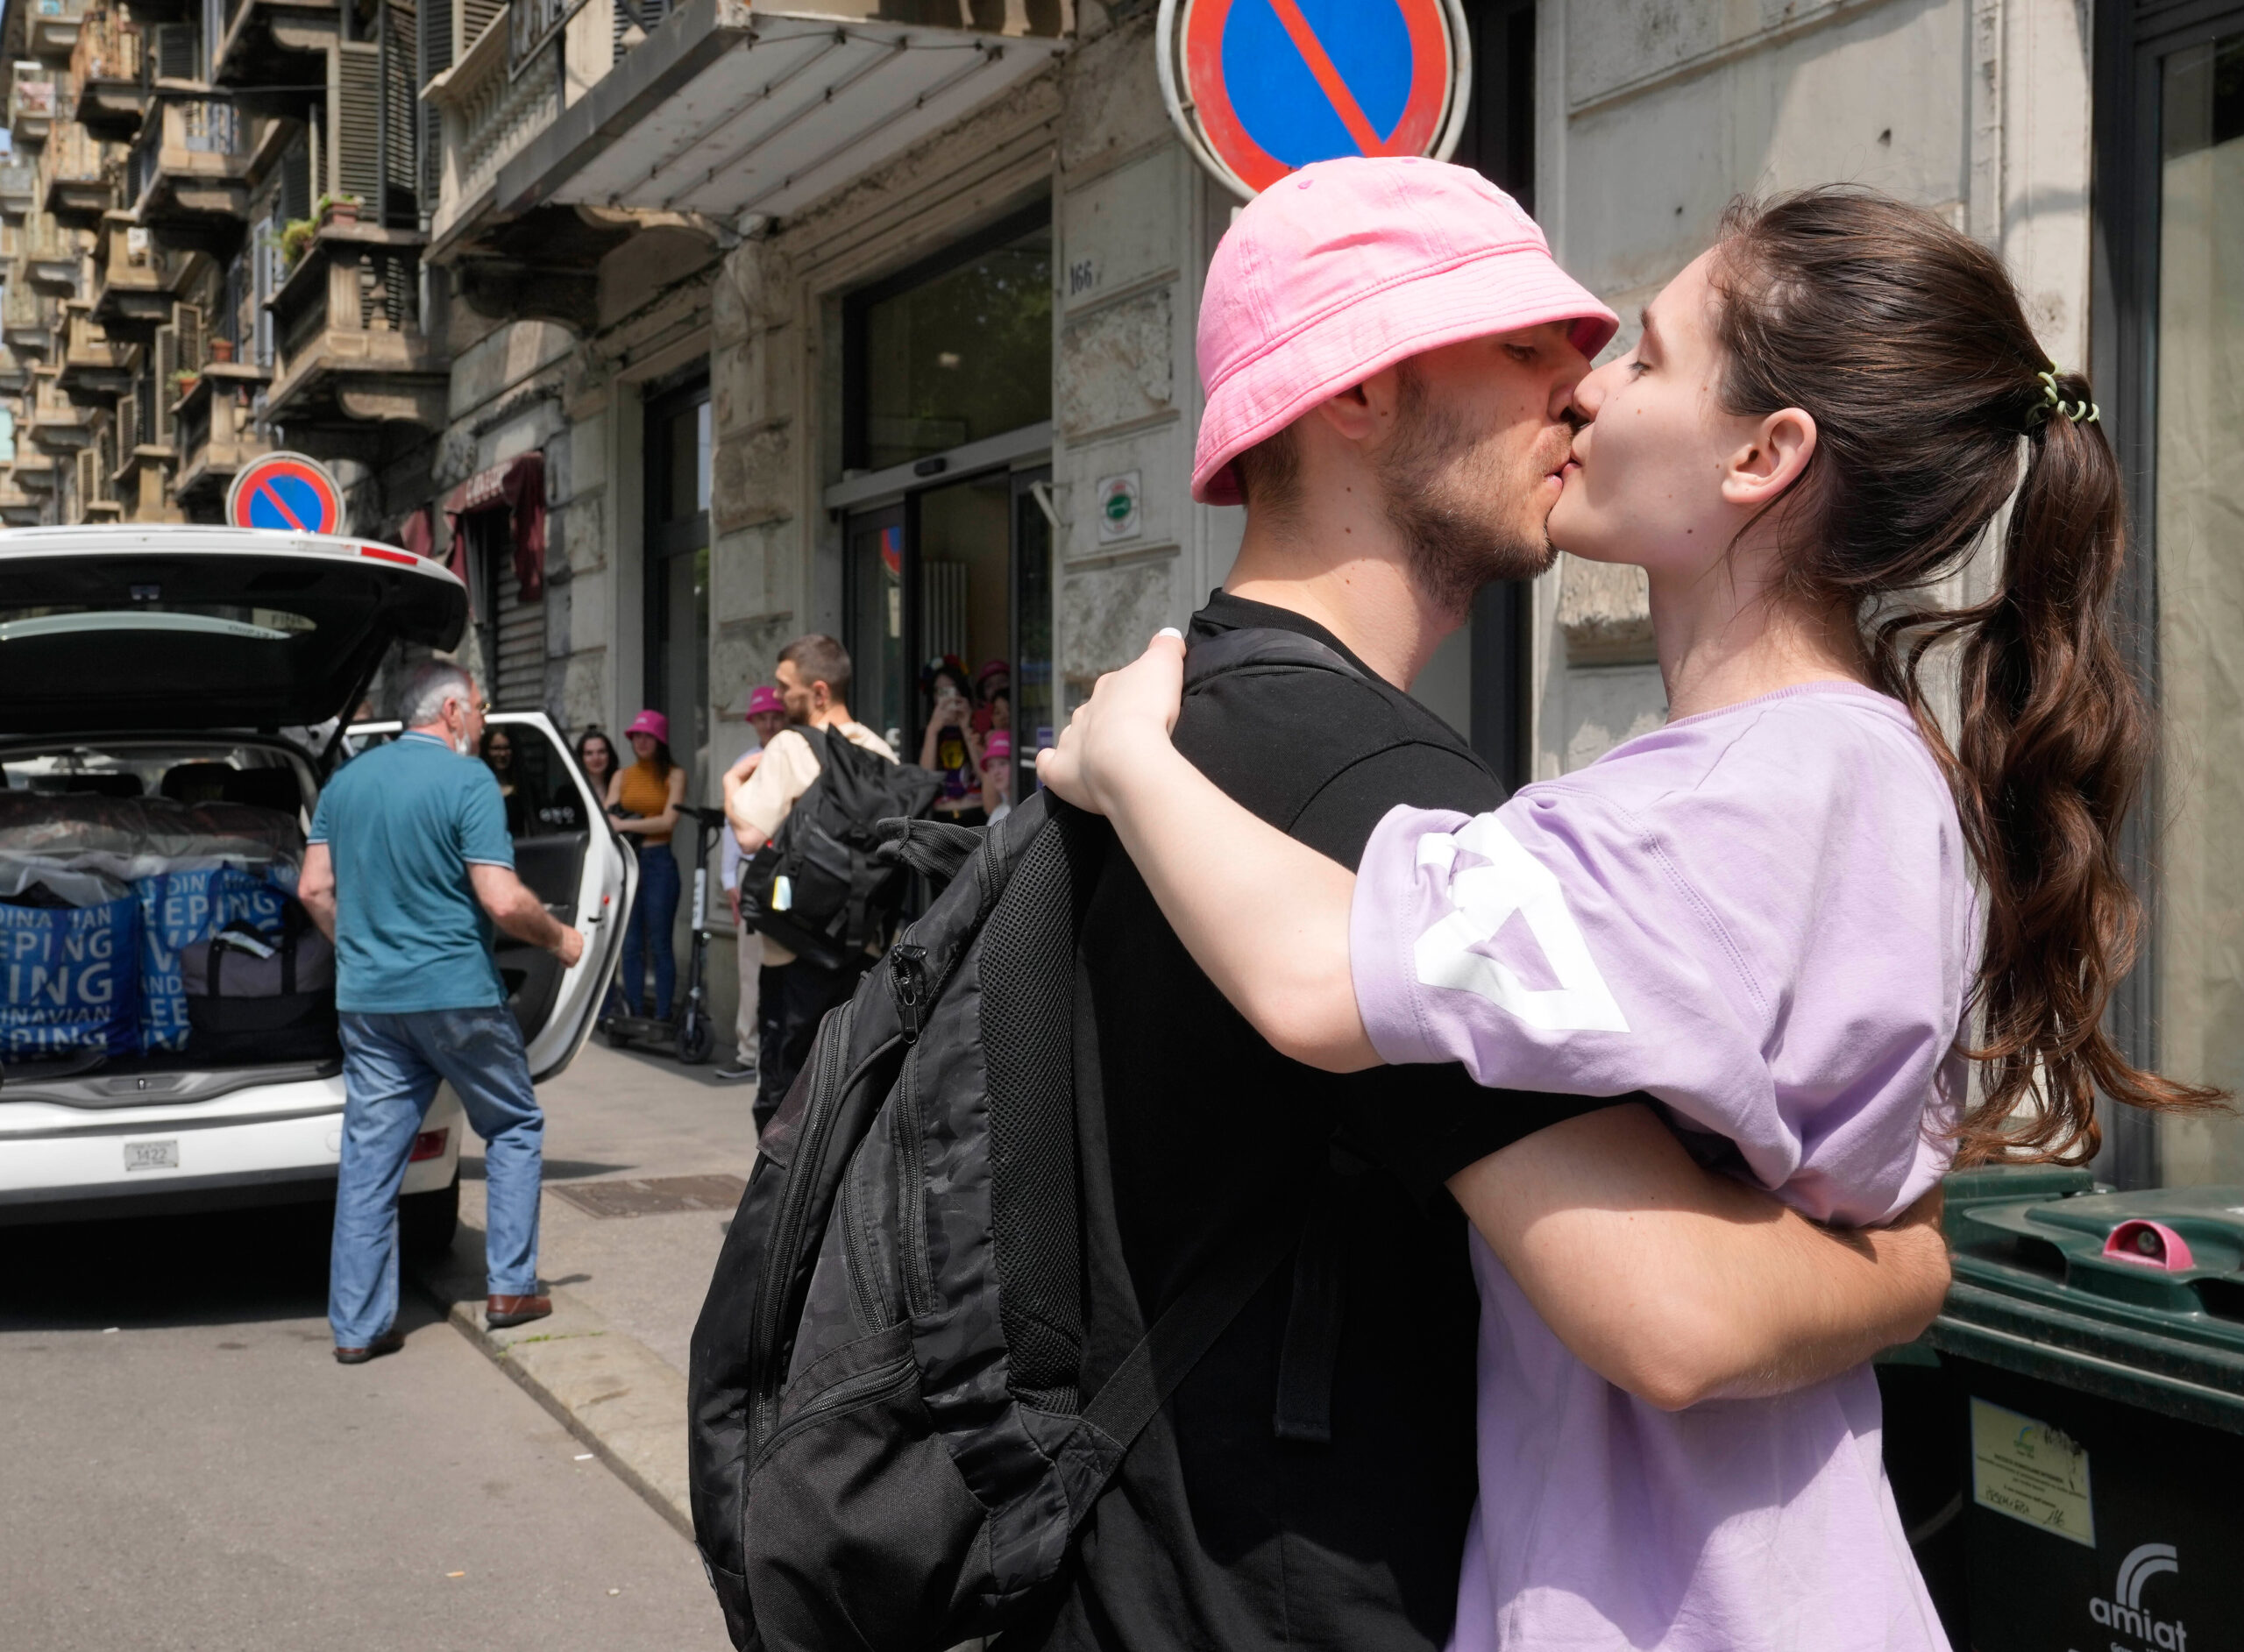 Oleh Psiuk küsst seine Freundin Oleksandra